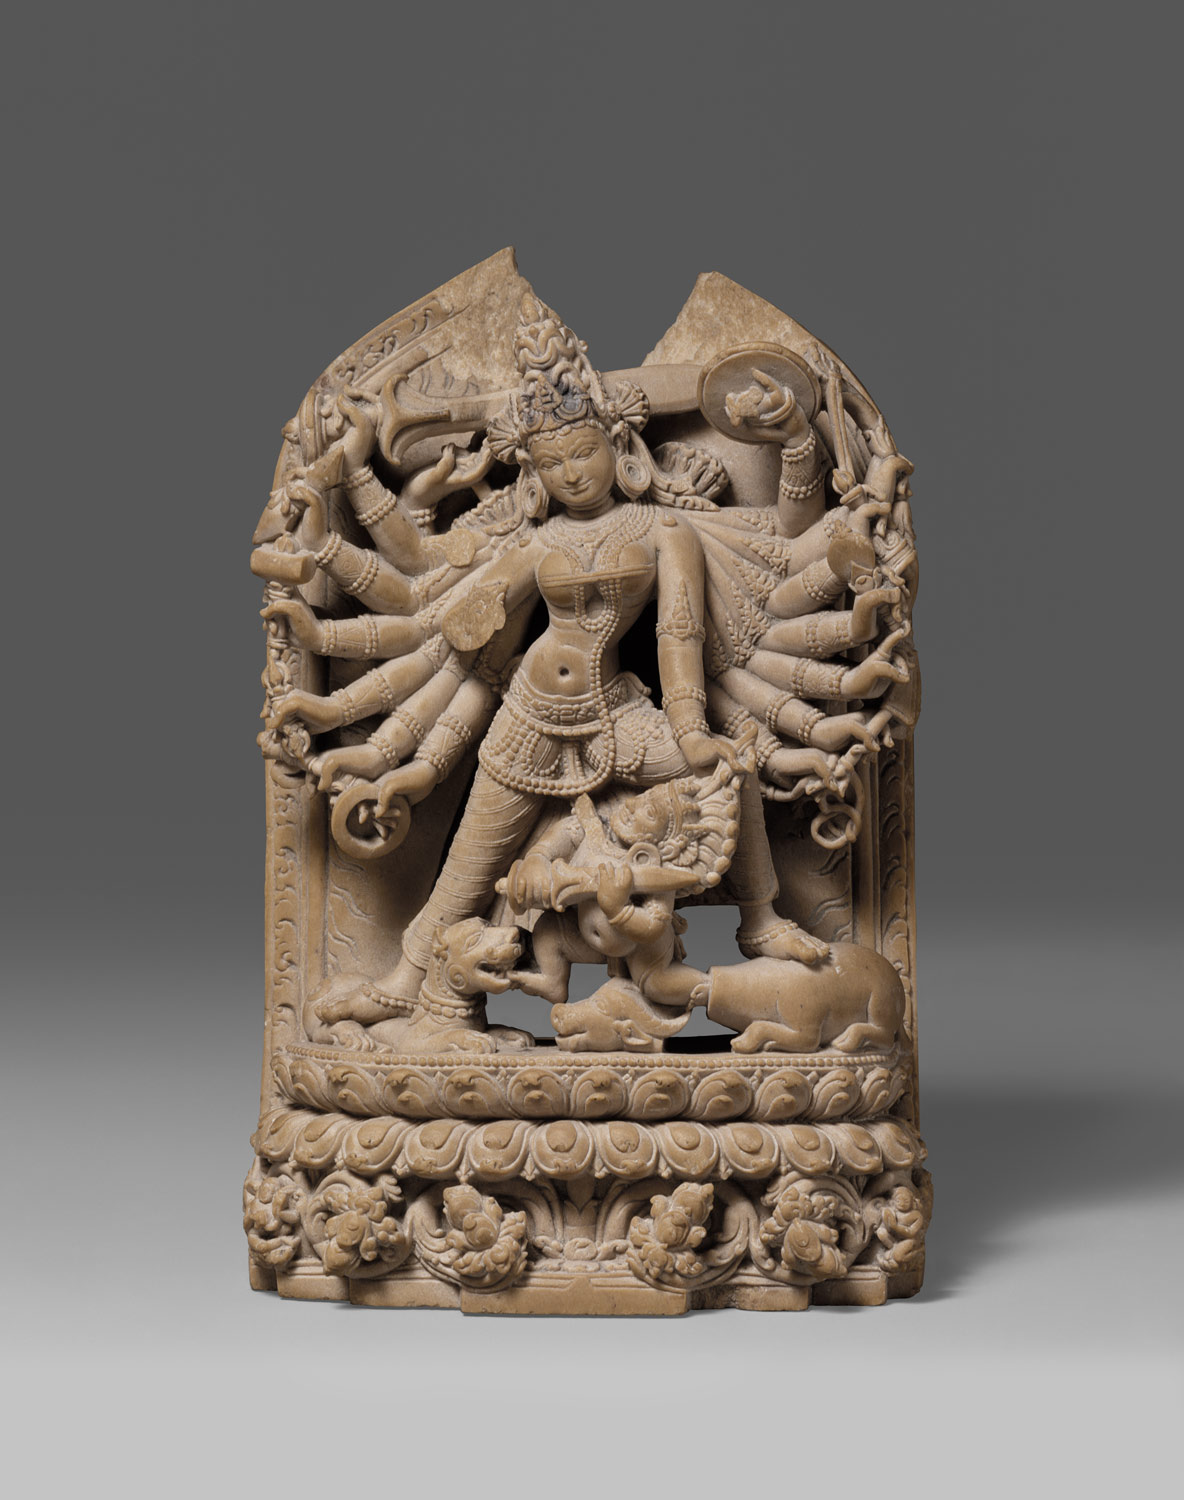 The Goddess Durga Killing the Buffalo Demon (Mahishasura Mardini)